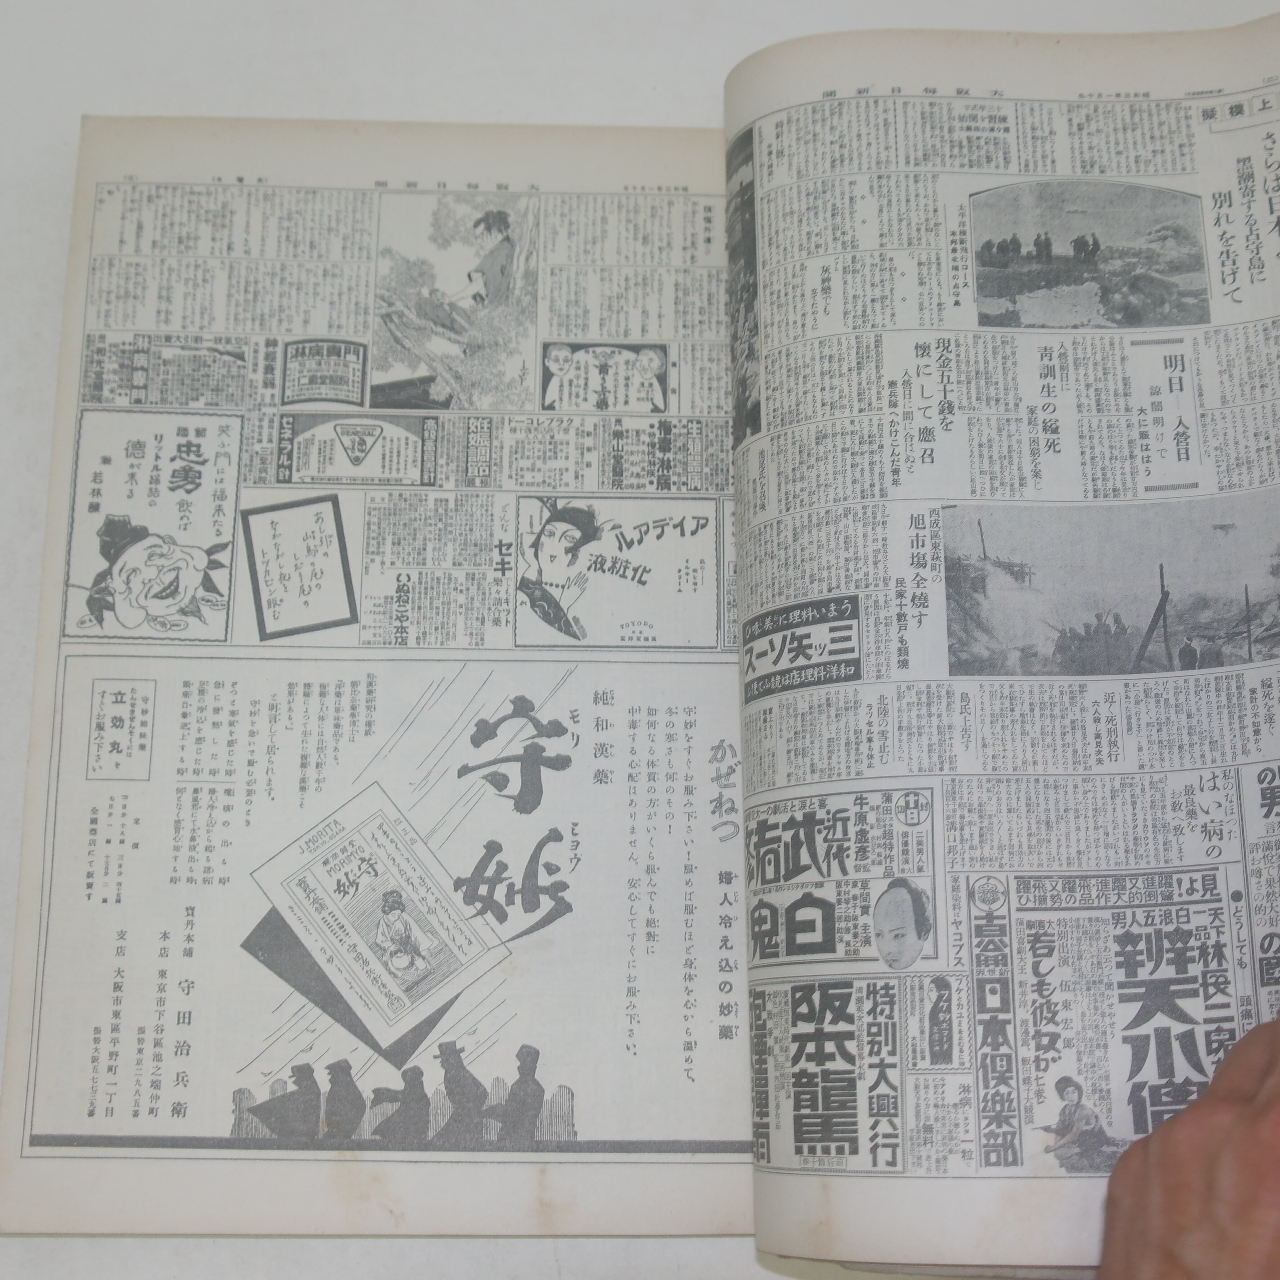 1928년 일본간행 오사카매일신문 축소판